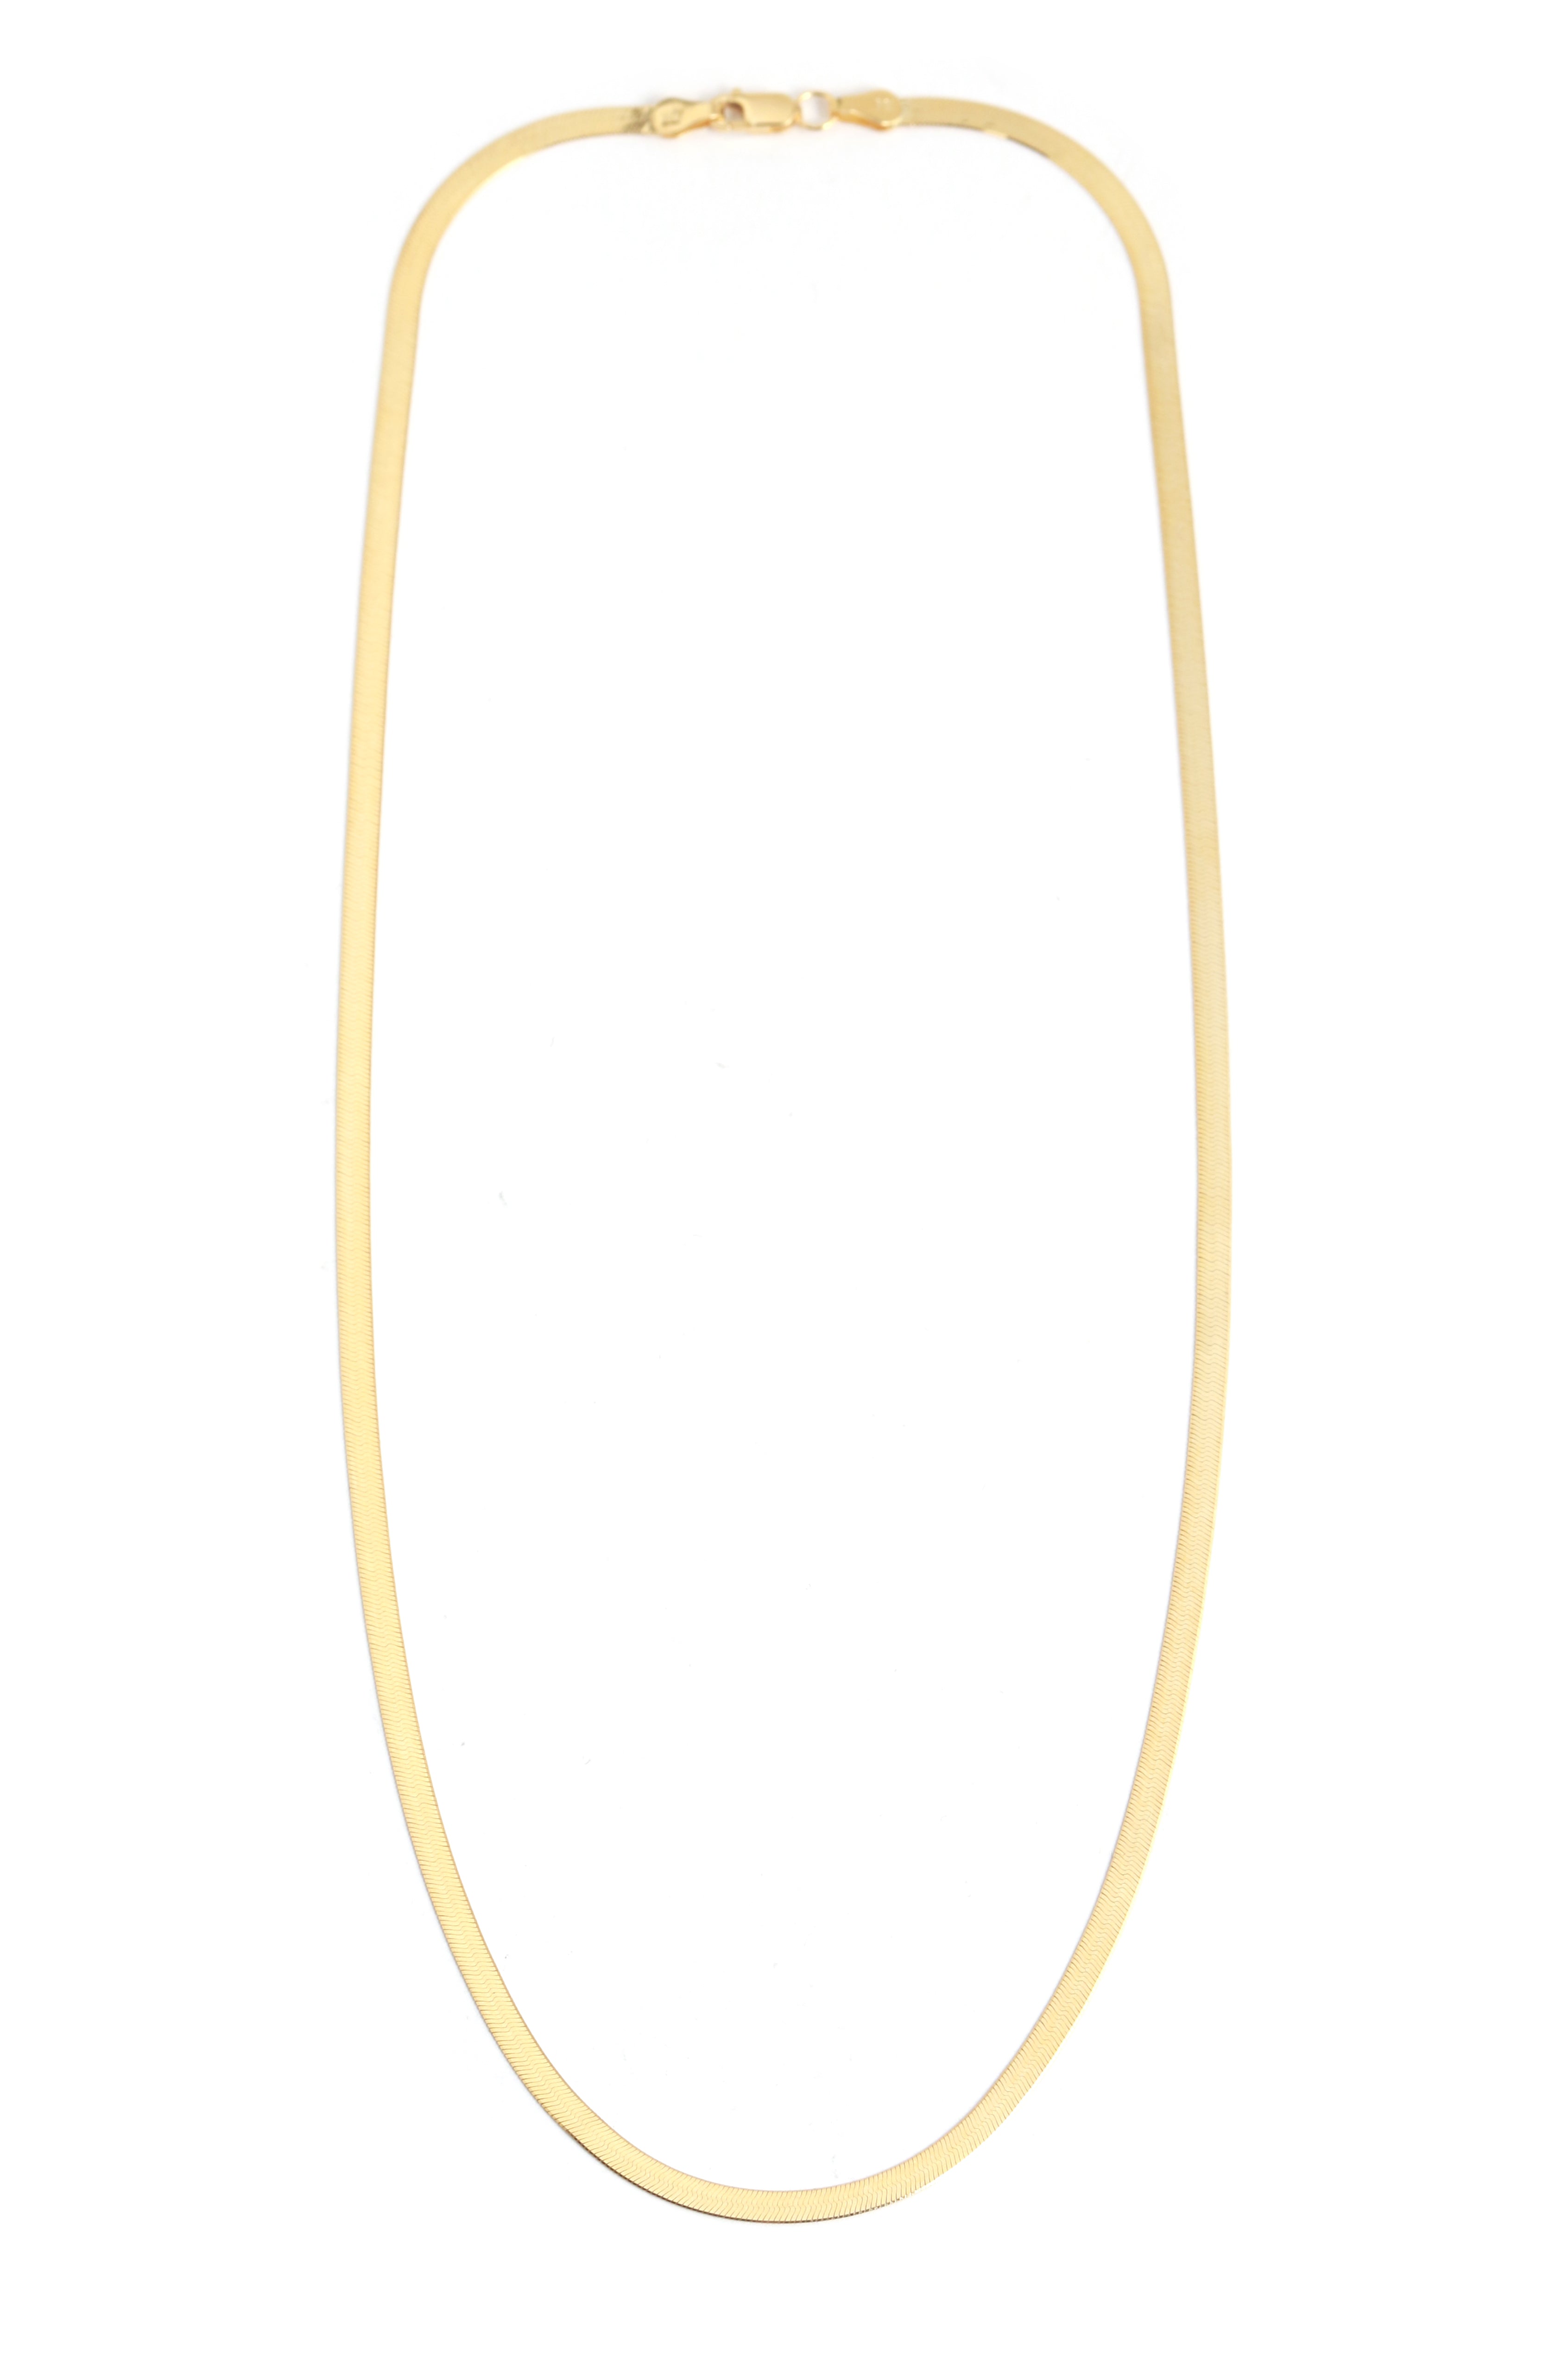 Gold Herringbone Chain - 3mm width